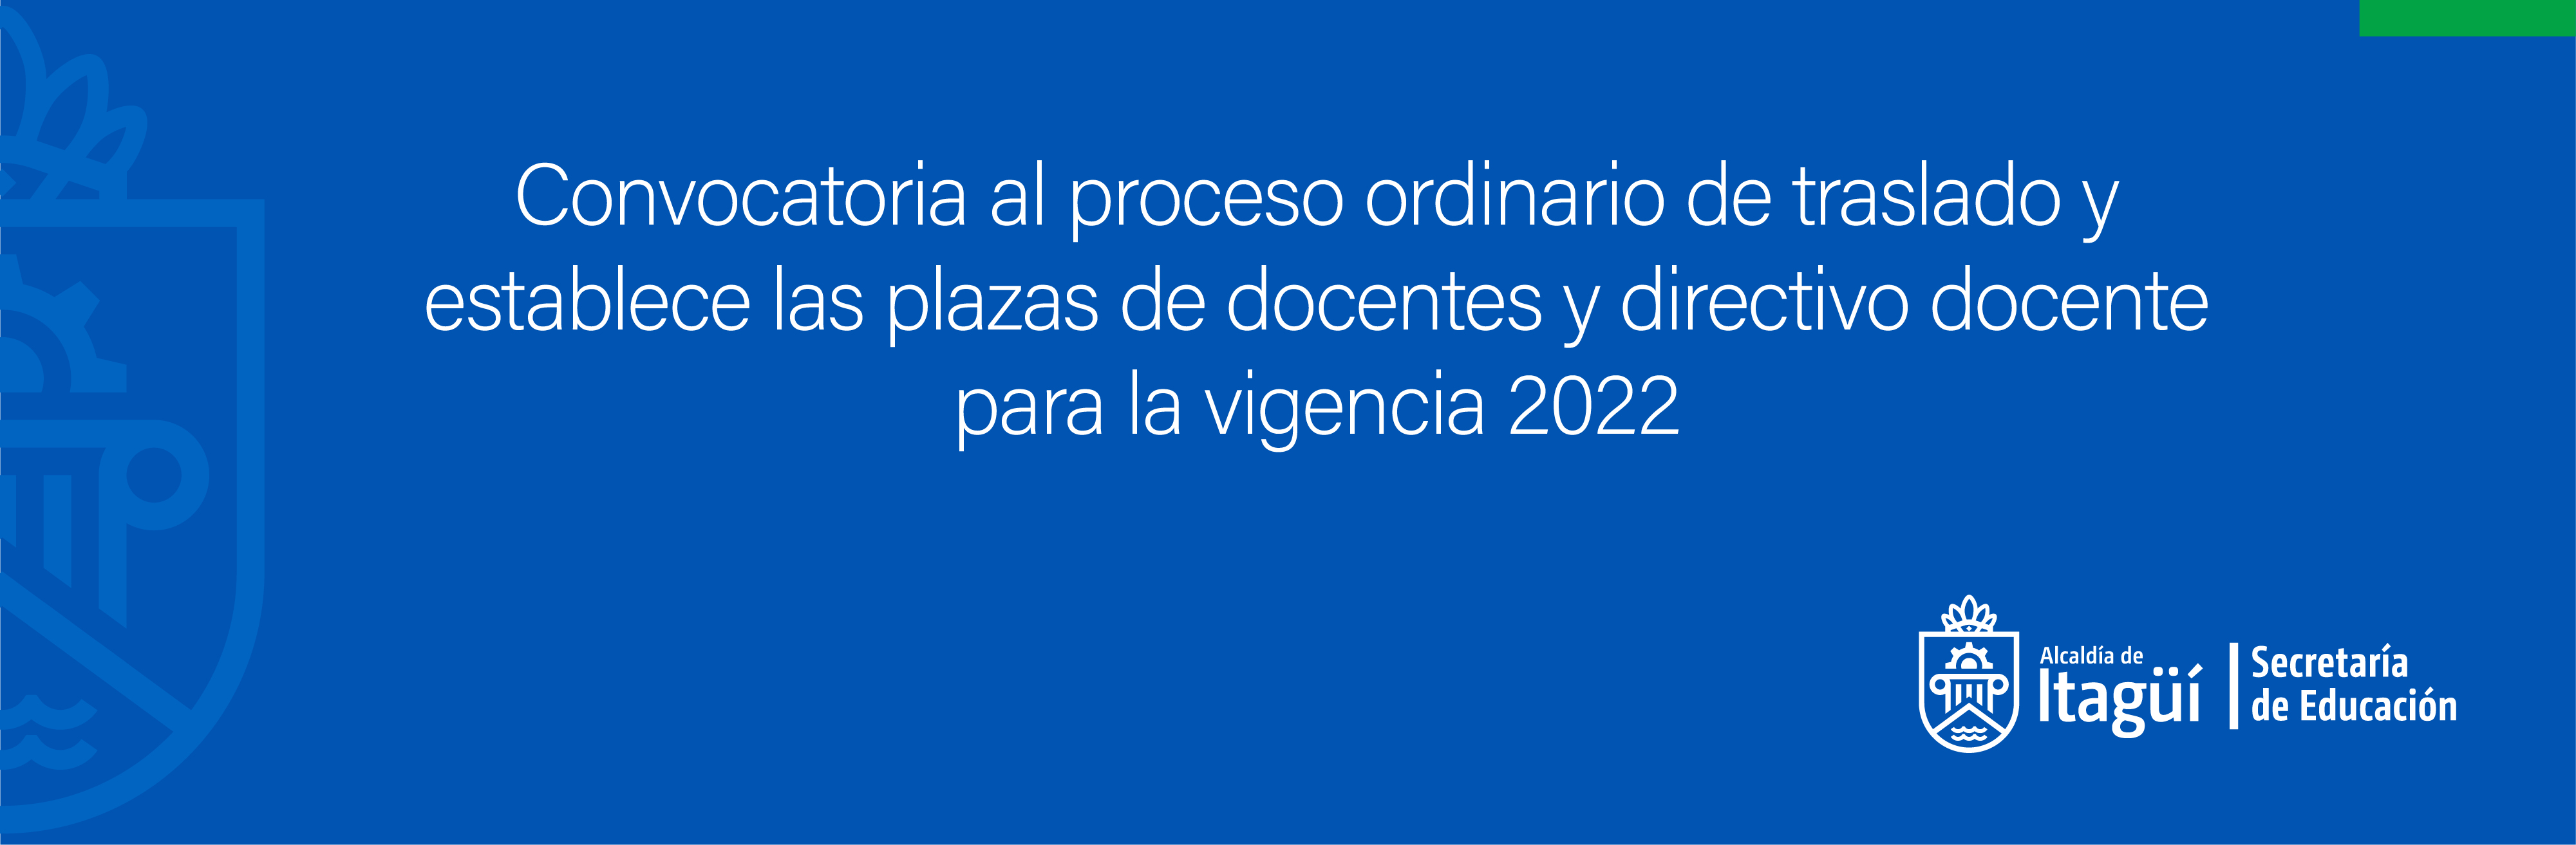 Convocatoria al proceso ordinario de traslado y establece las plazas de docentes y directivo docente para la vigencia 2022